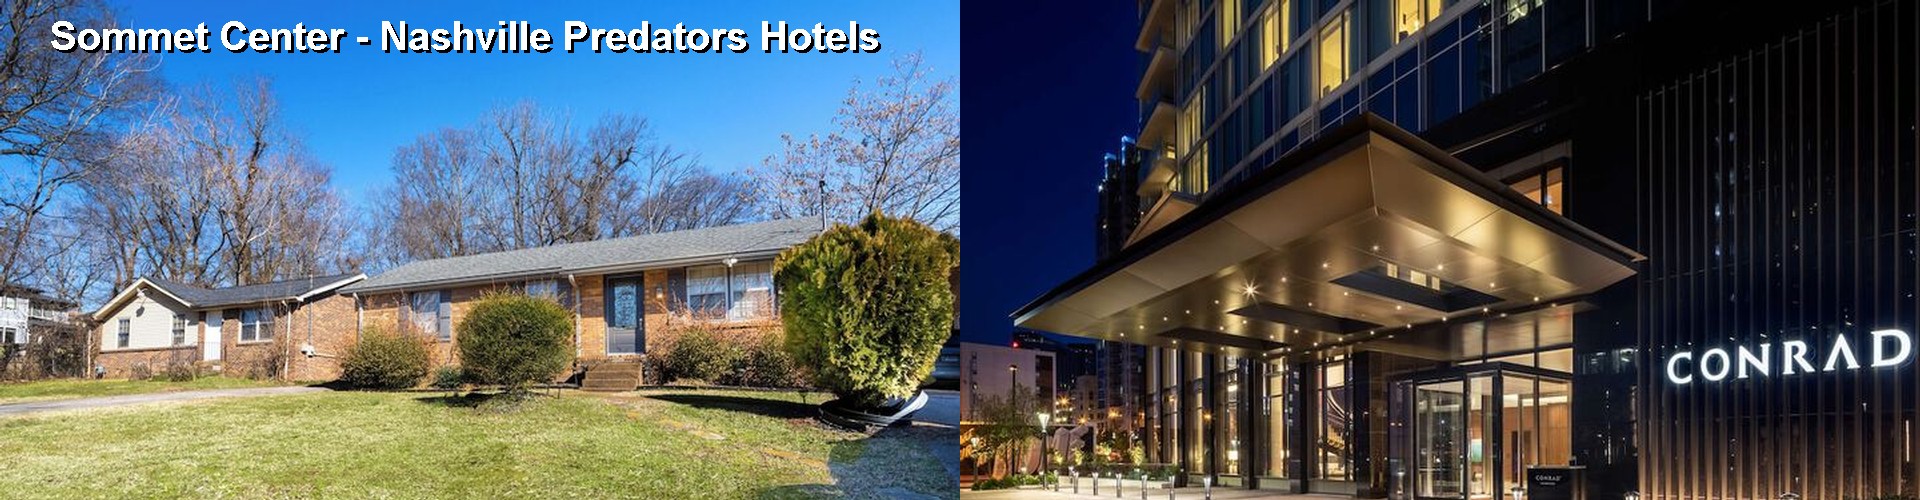 5 Best Hotels near Sommet Center - Nashville Predators